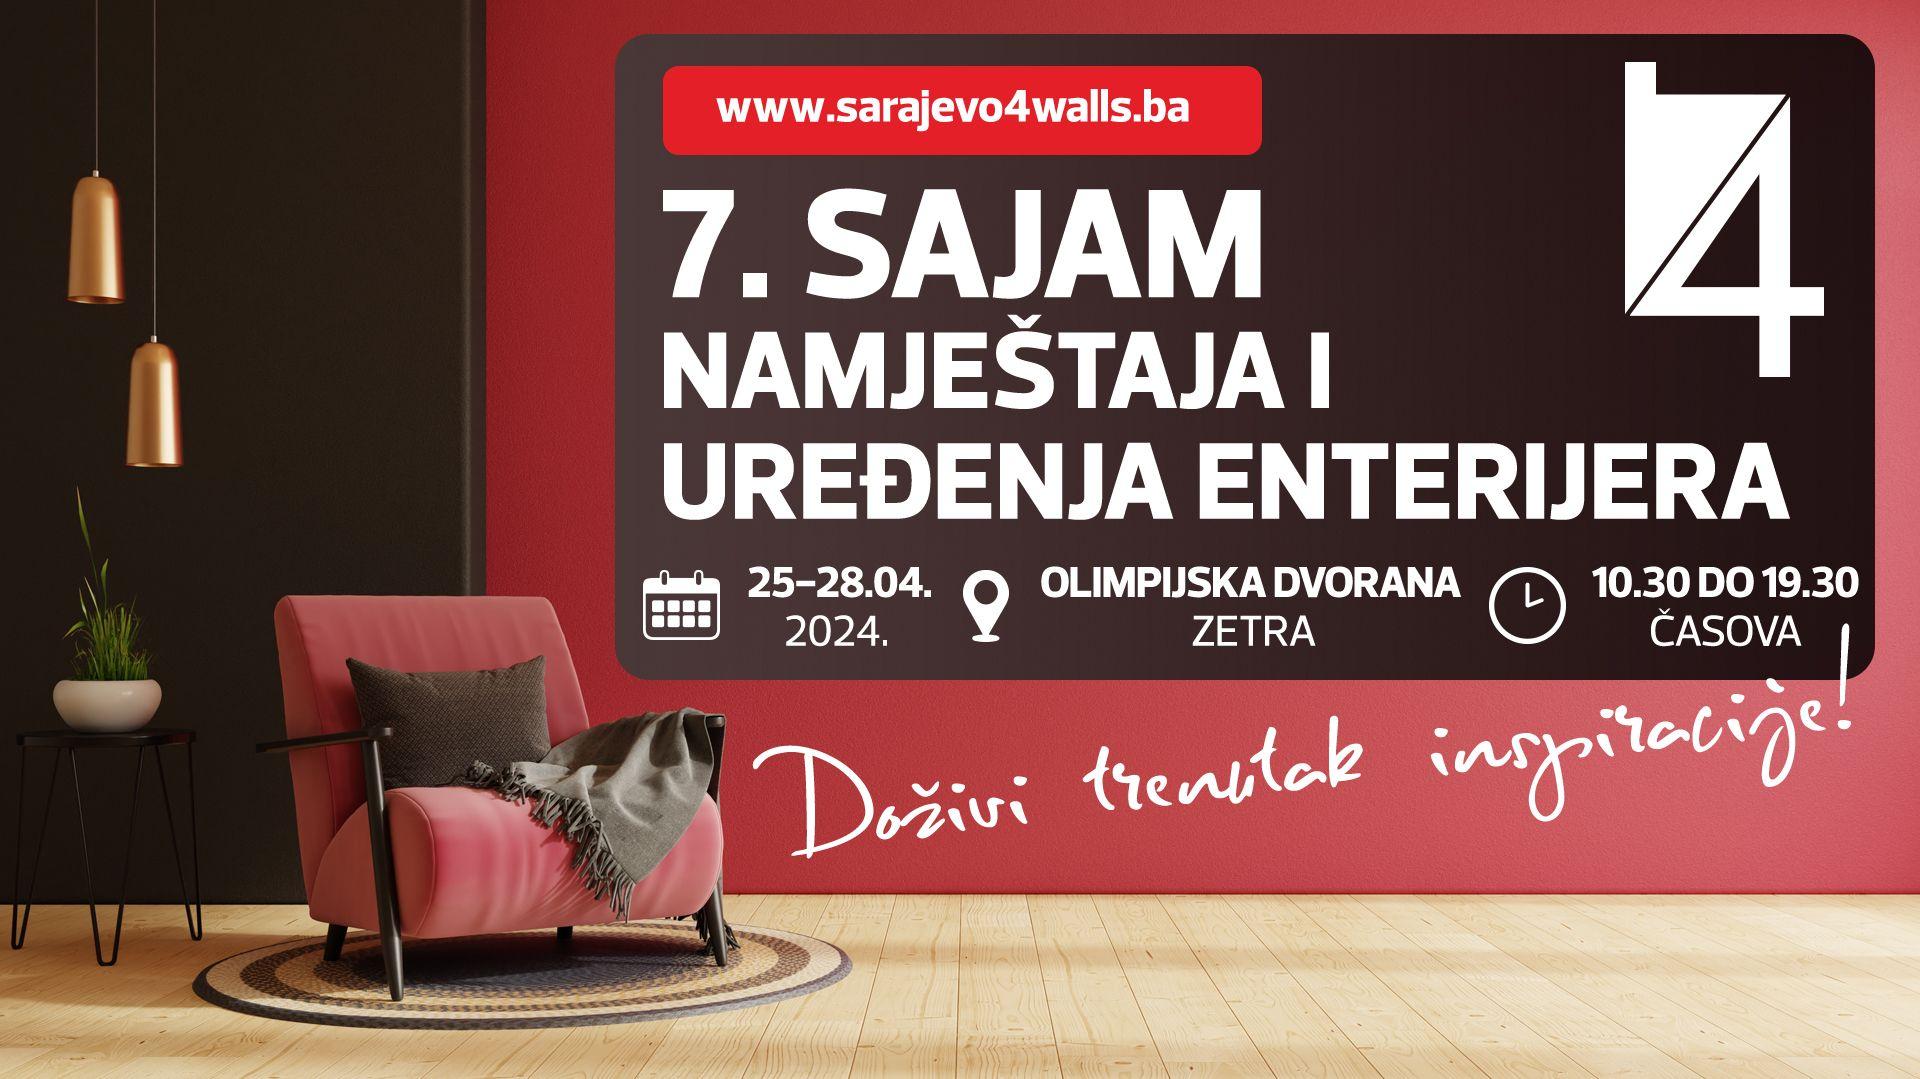 Sve je spremno za početak 7. Međunarodnog sajma namještaja Sarajevo4walls – s4w 2024